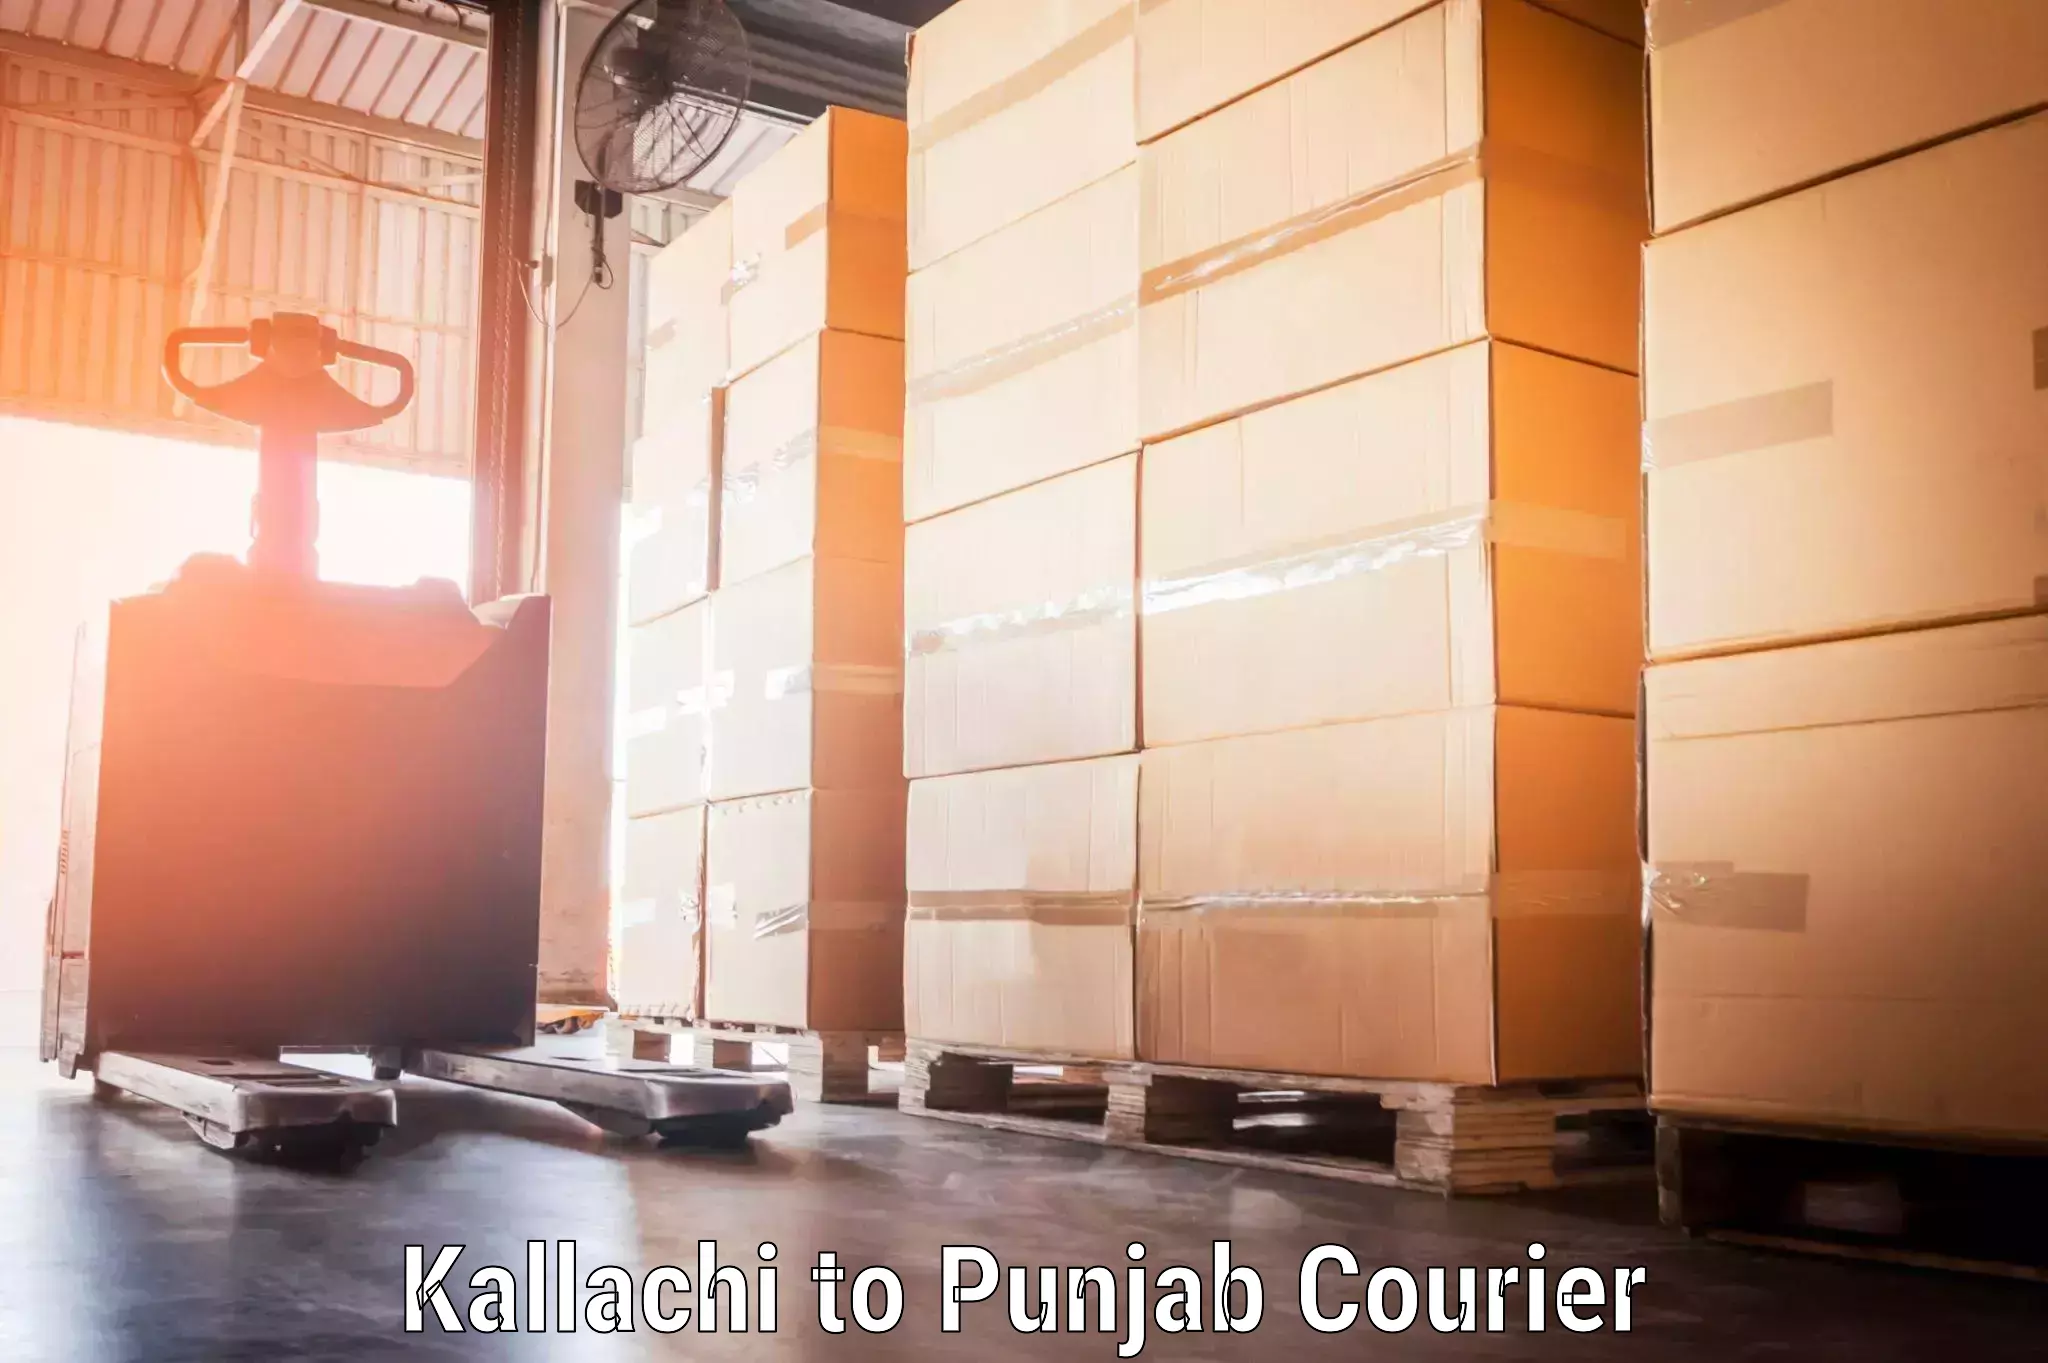 Luggage shipment specialists Kallachi to Bathinda